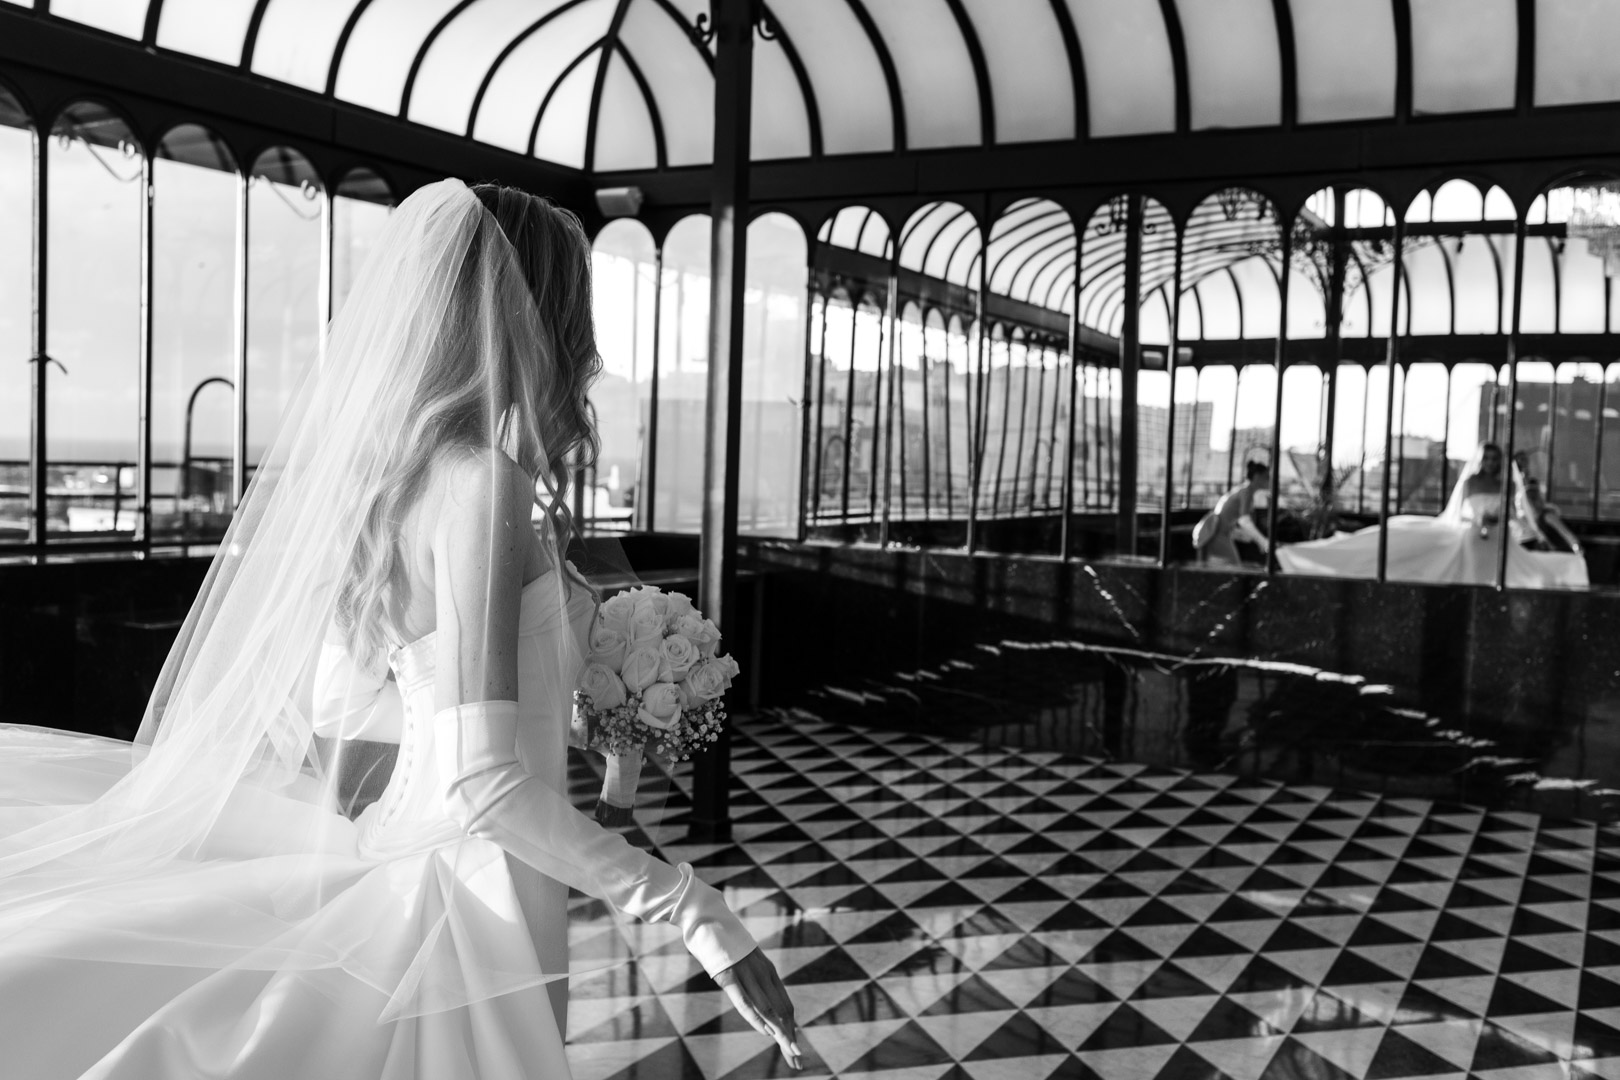 Casamiento, first look, sesion de novios, Alvear palace Hotel, Buenos Aires, Argentina, 54 Fotografía. Fotógrafos de bodas.
Wedding Photography, candid, wedding photographer